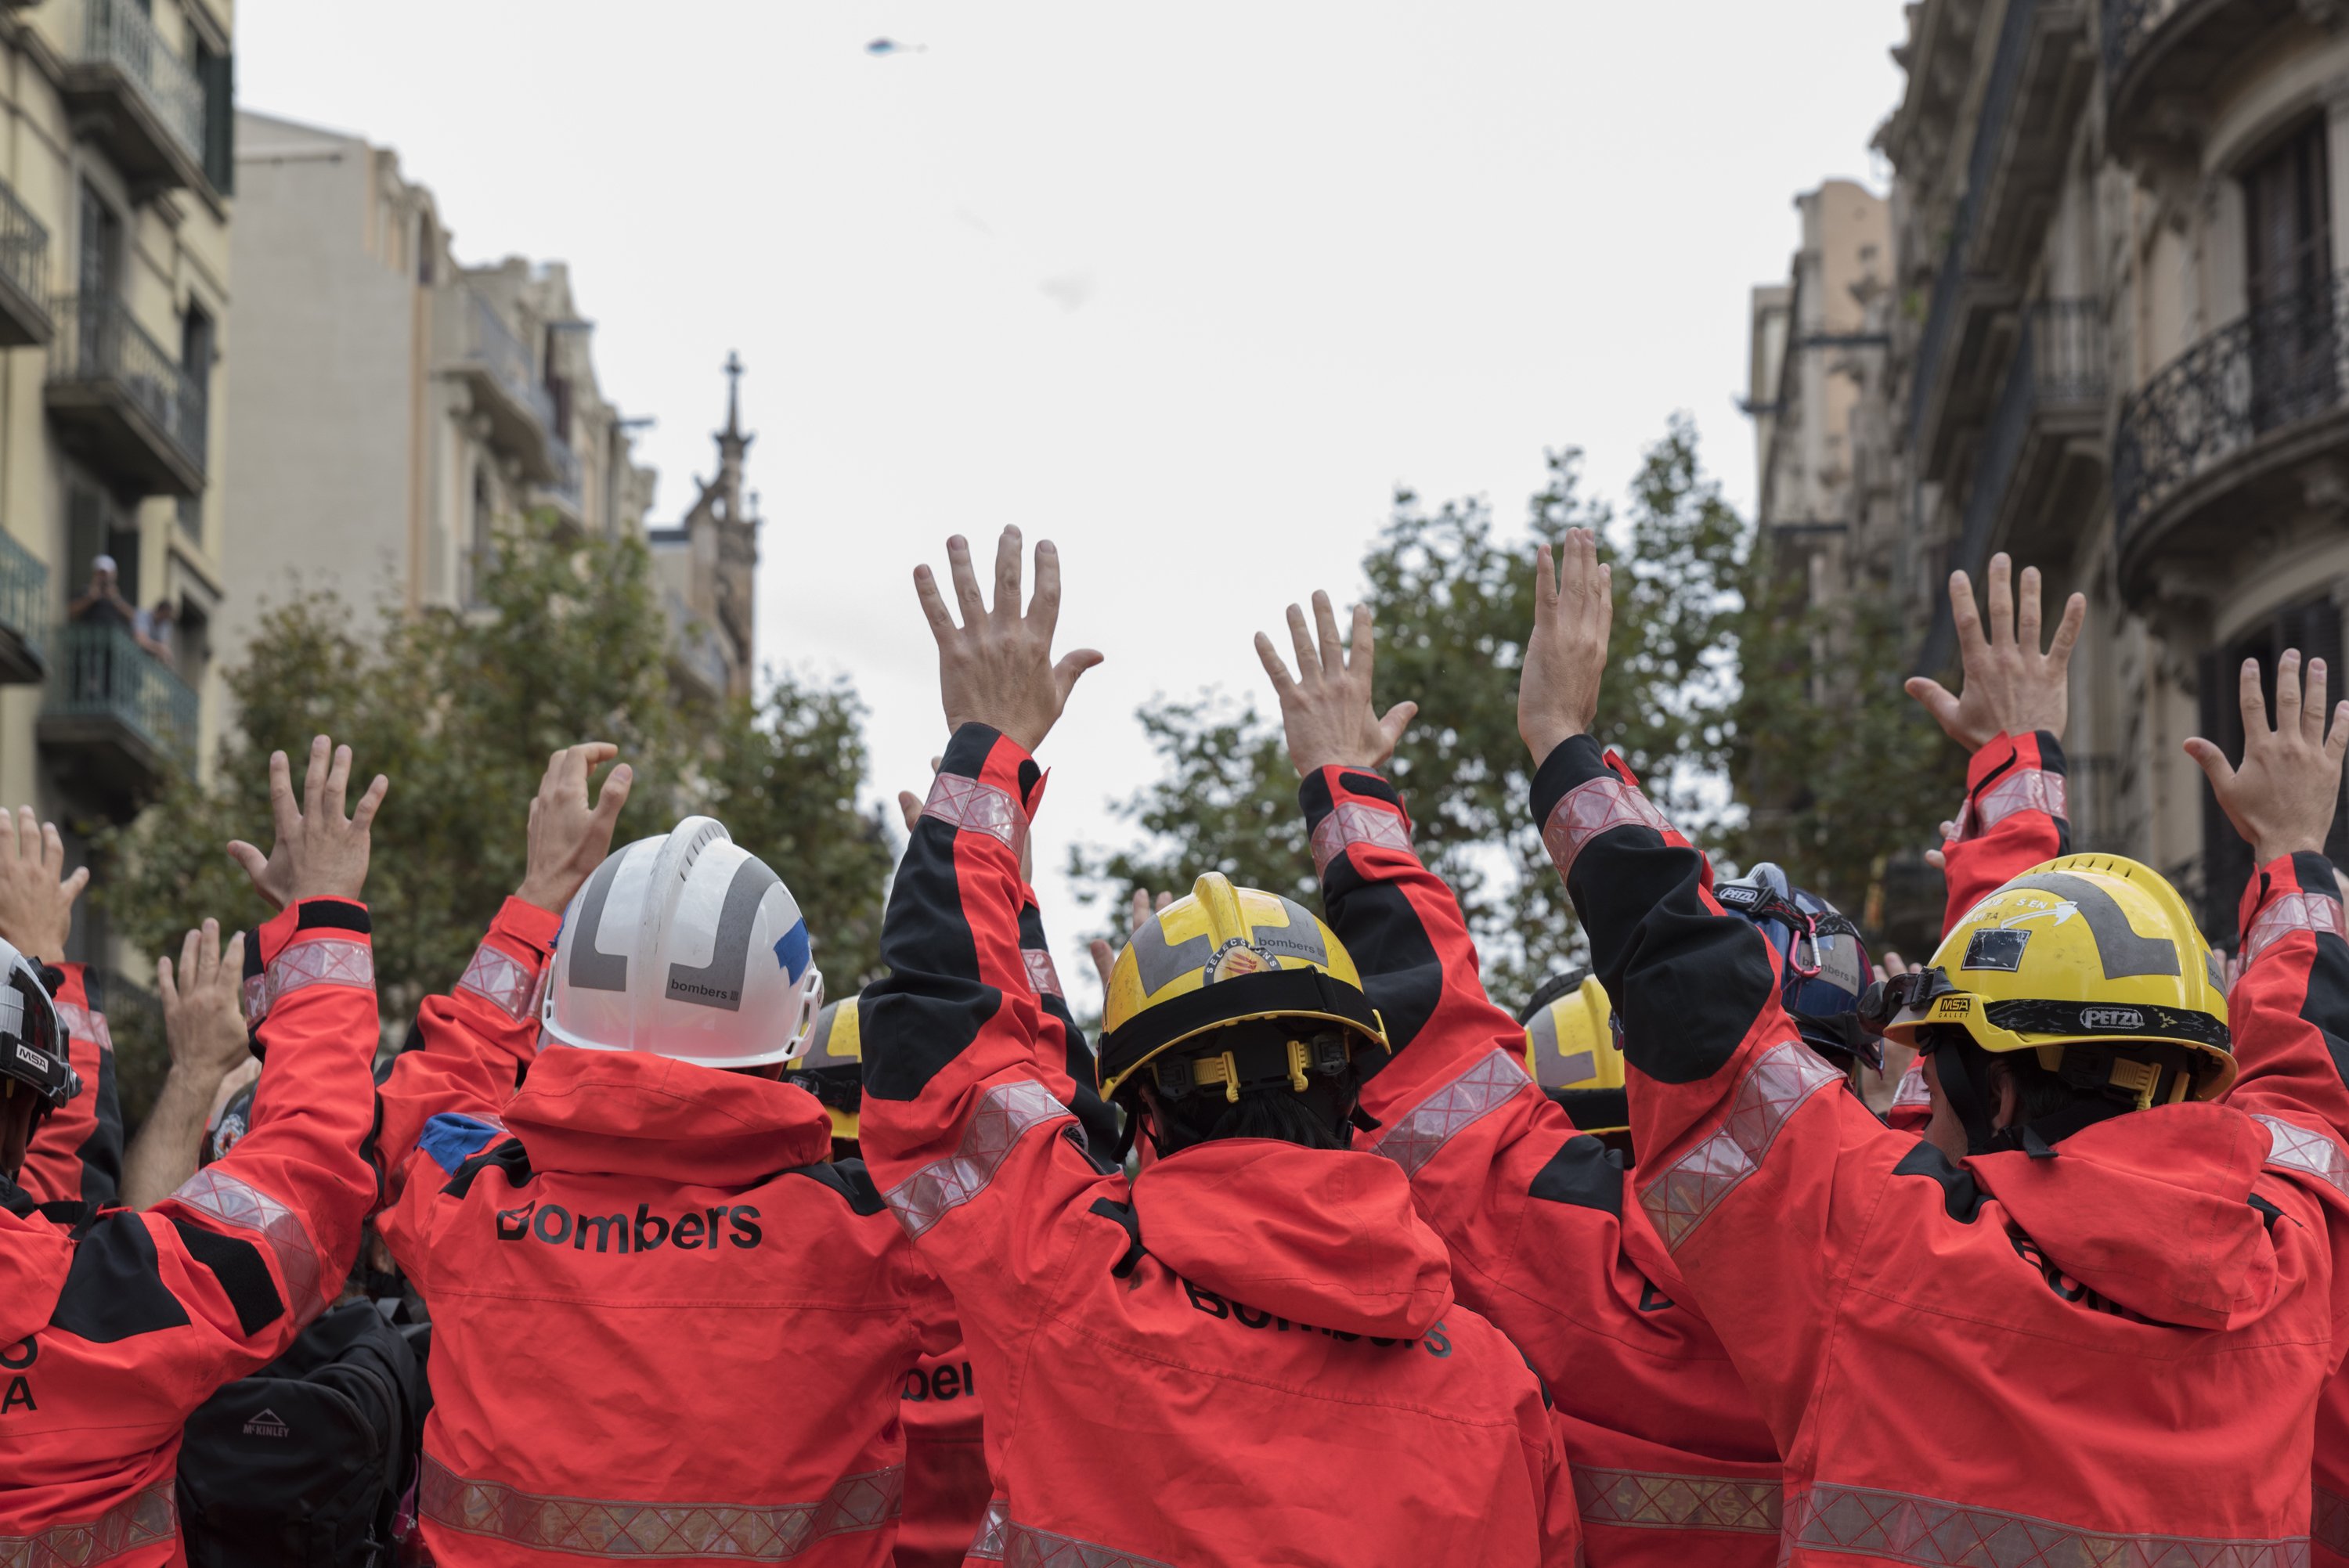 En la delegación del Gobierno español: "Menos policías, más bomberos"